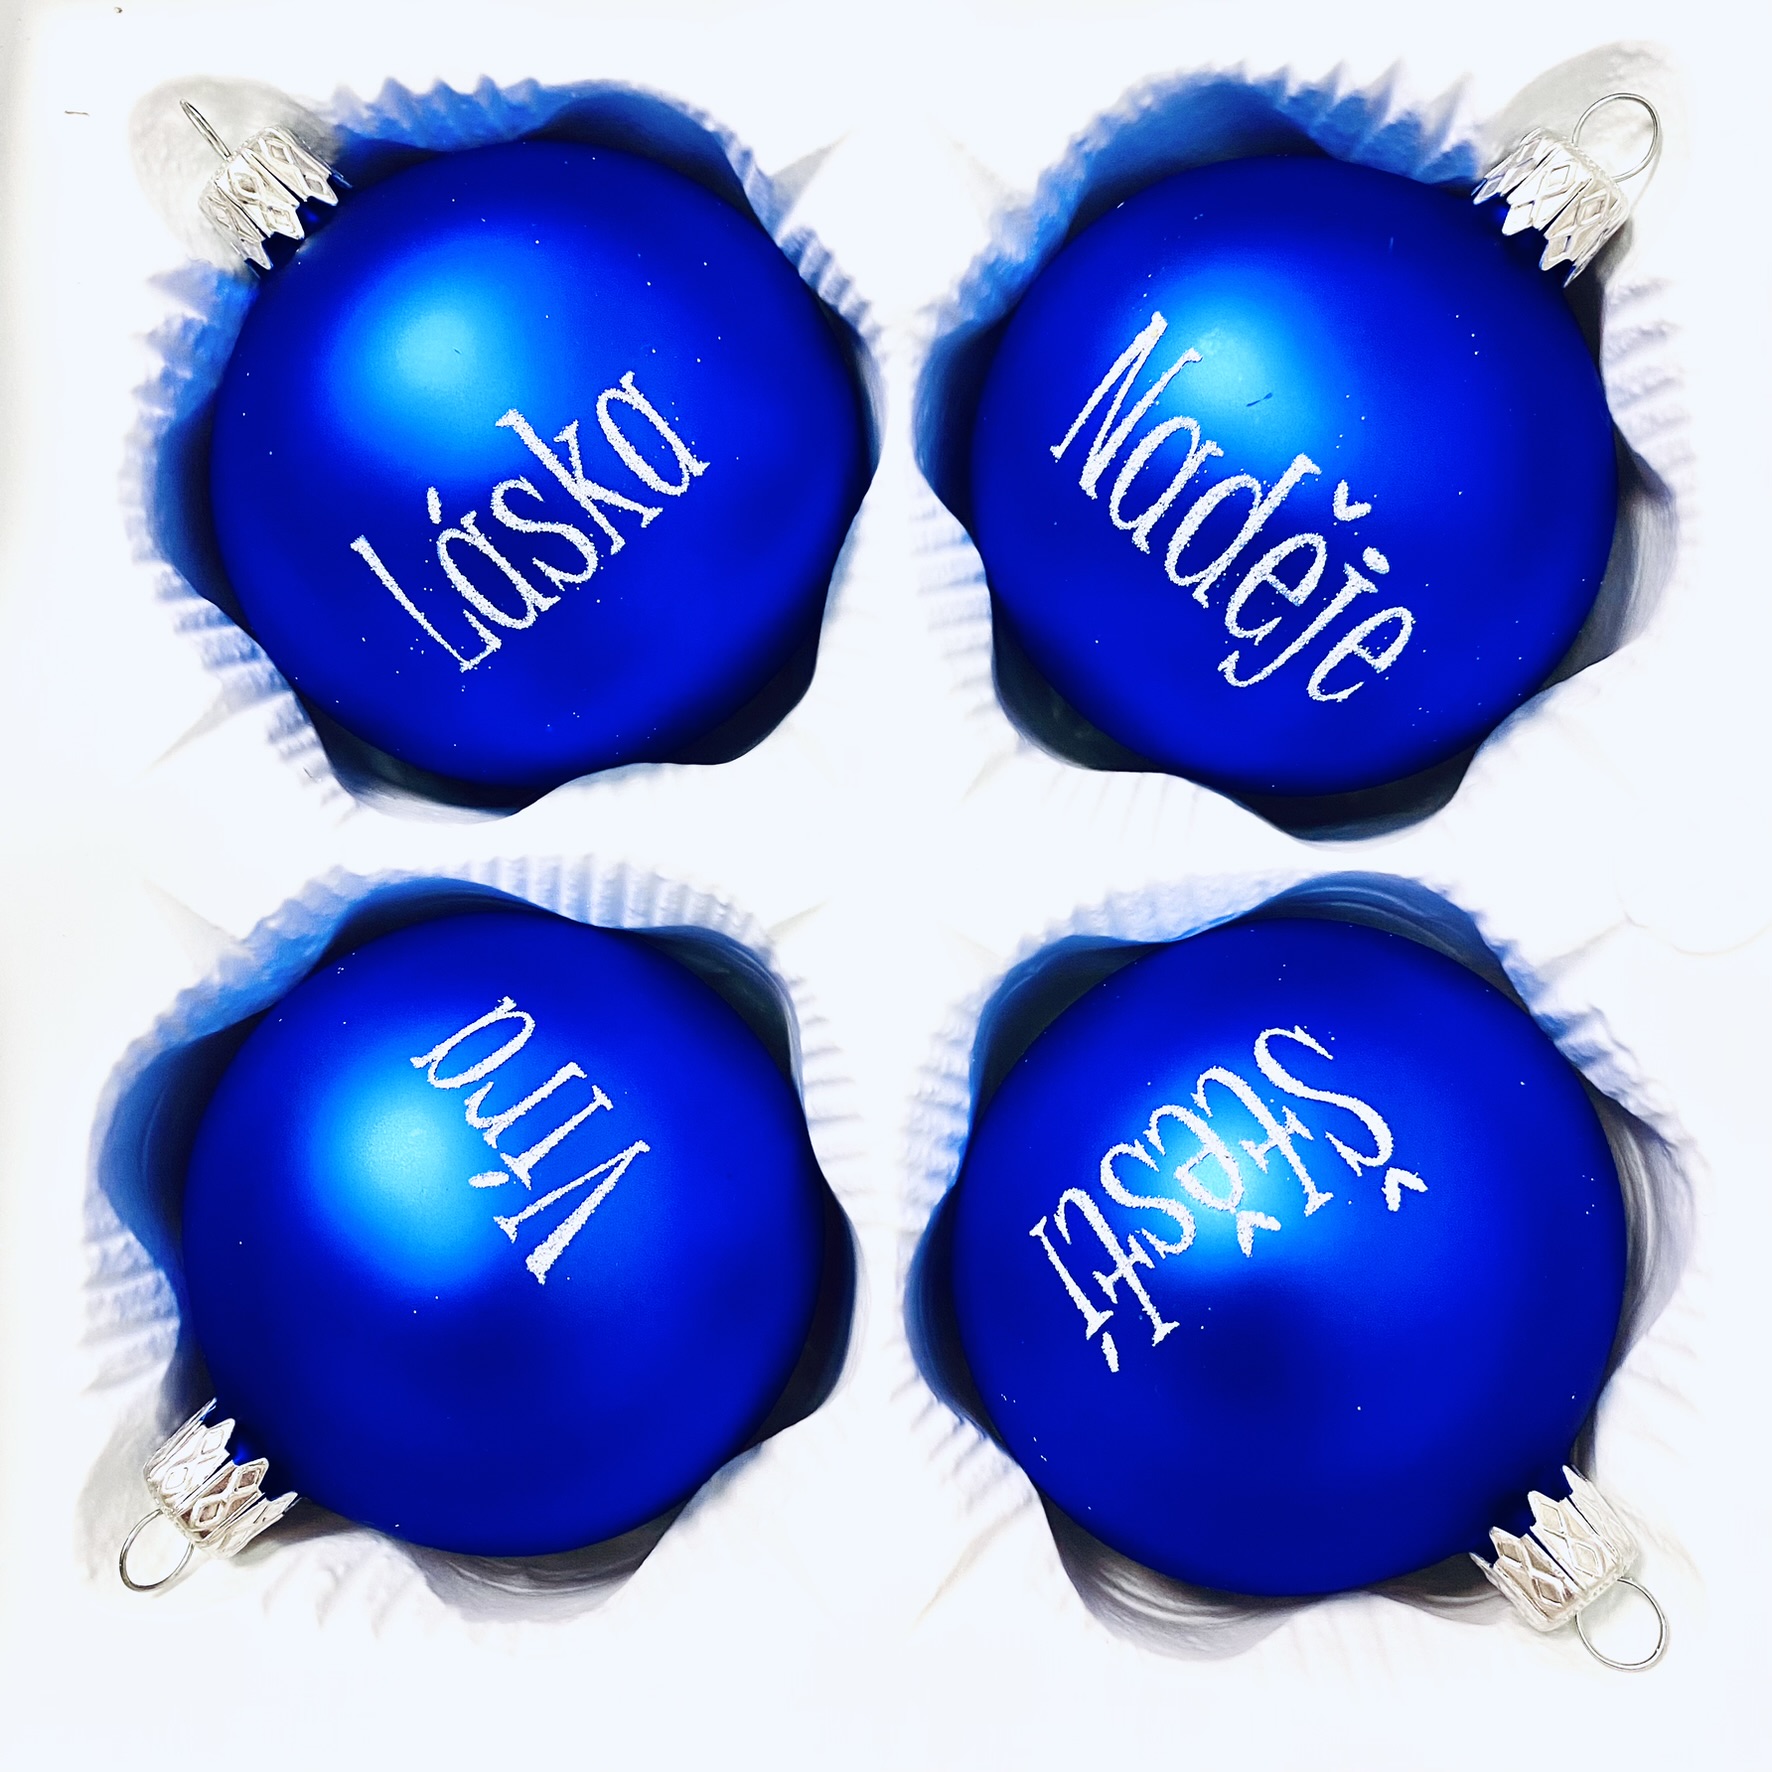 IRISA Skleněná vánoční sada 'Víra, Láska, Naděje, Štěstí' velikost 7 cm, sada 4 ks, - Modrá elegance Balení: 4ks, Barva: modrá, Velikost: 7 cm